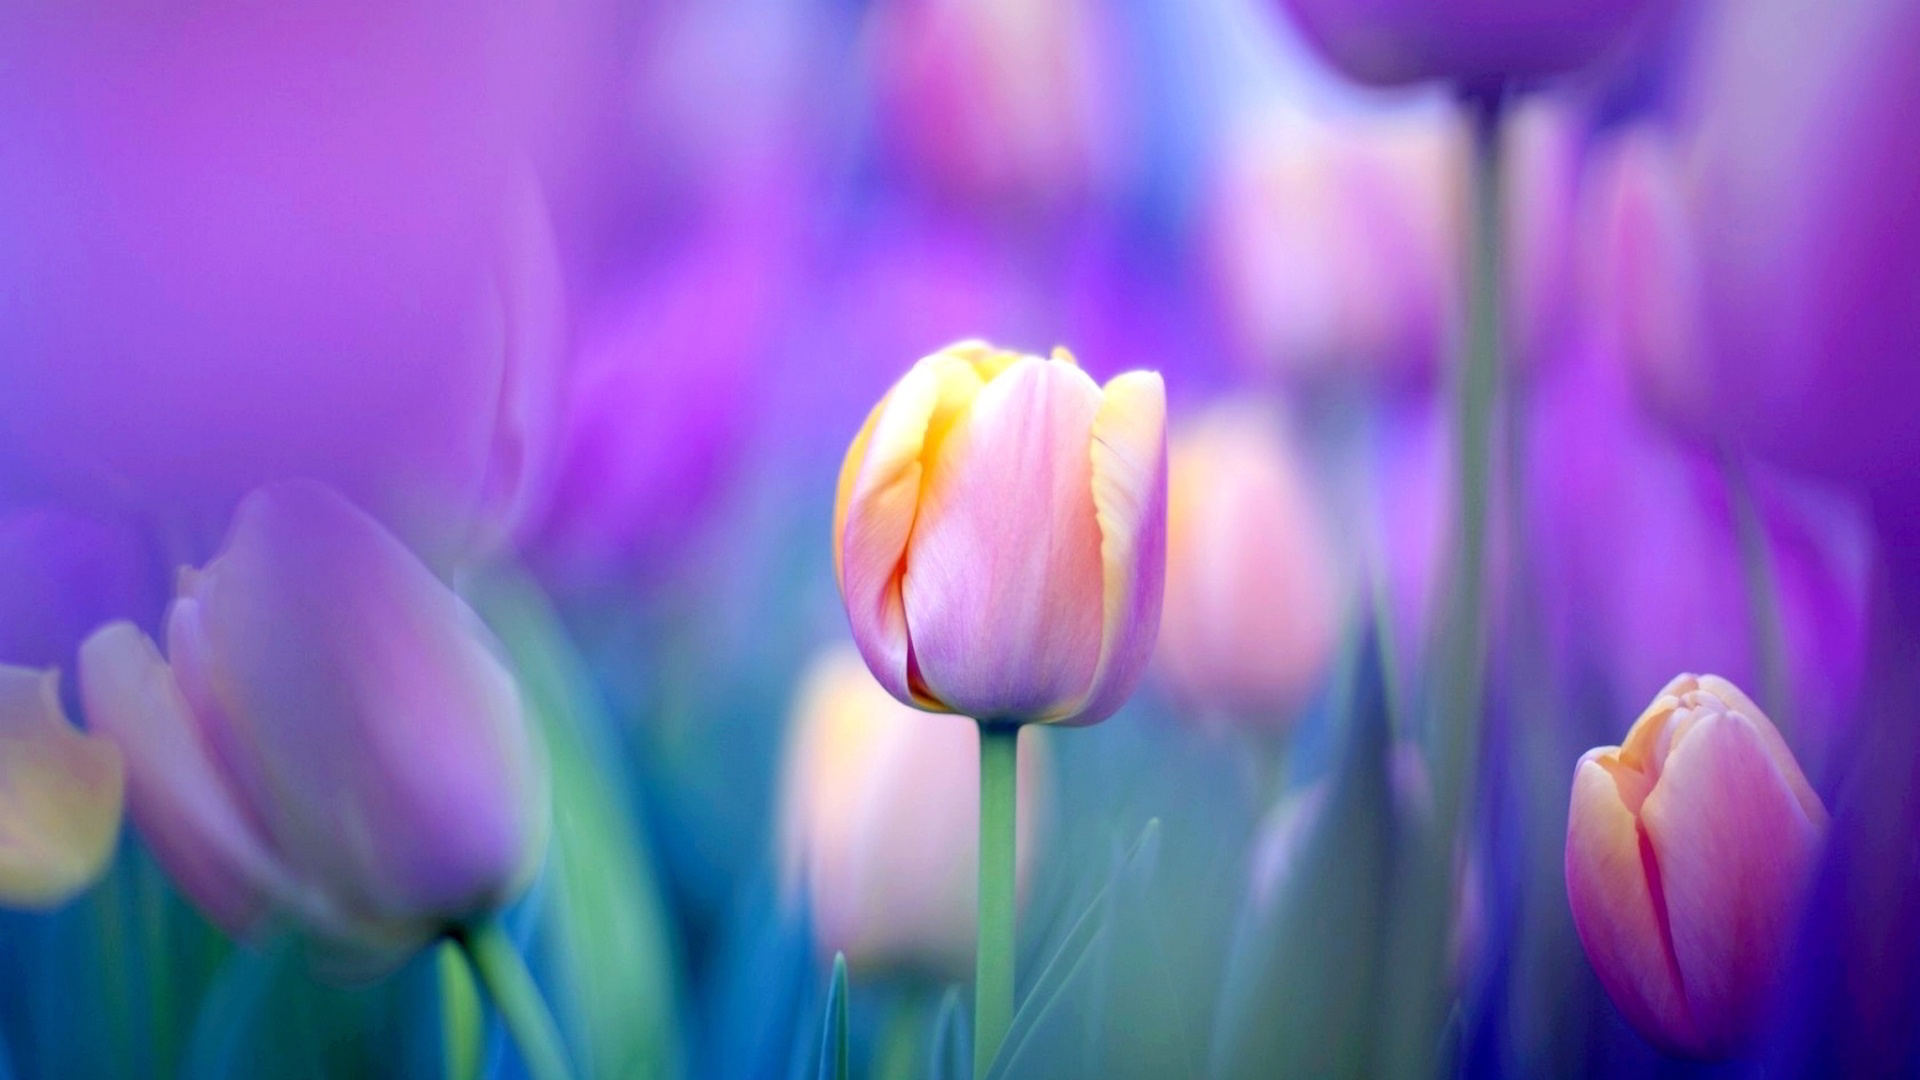 tulips flowers wallpapers,flowering plant,petal,flower,tulip,purple